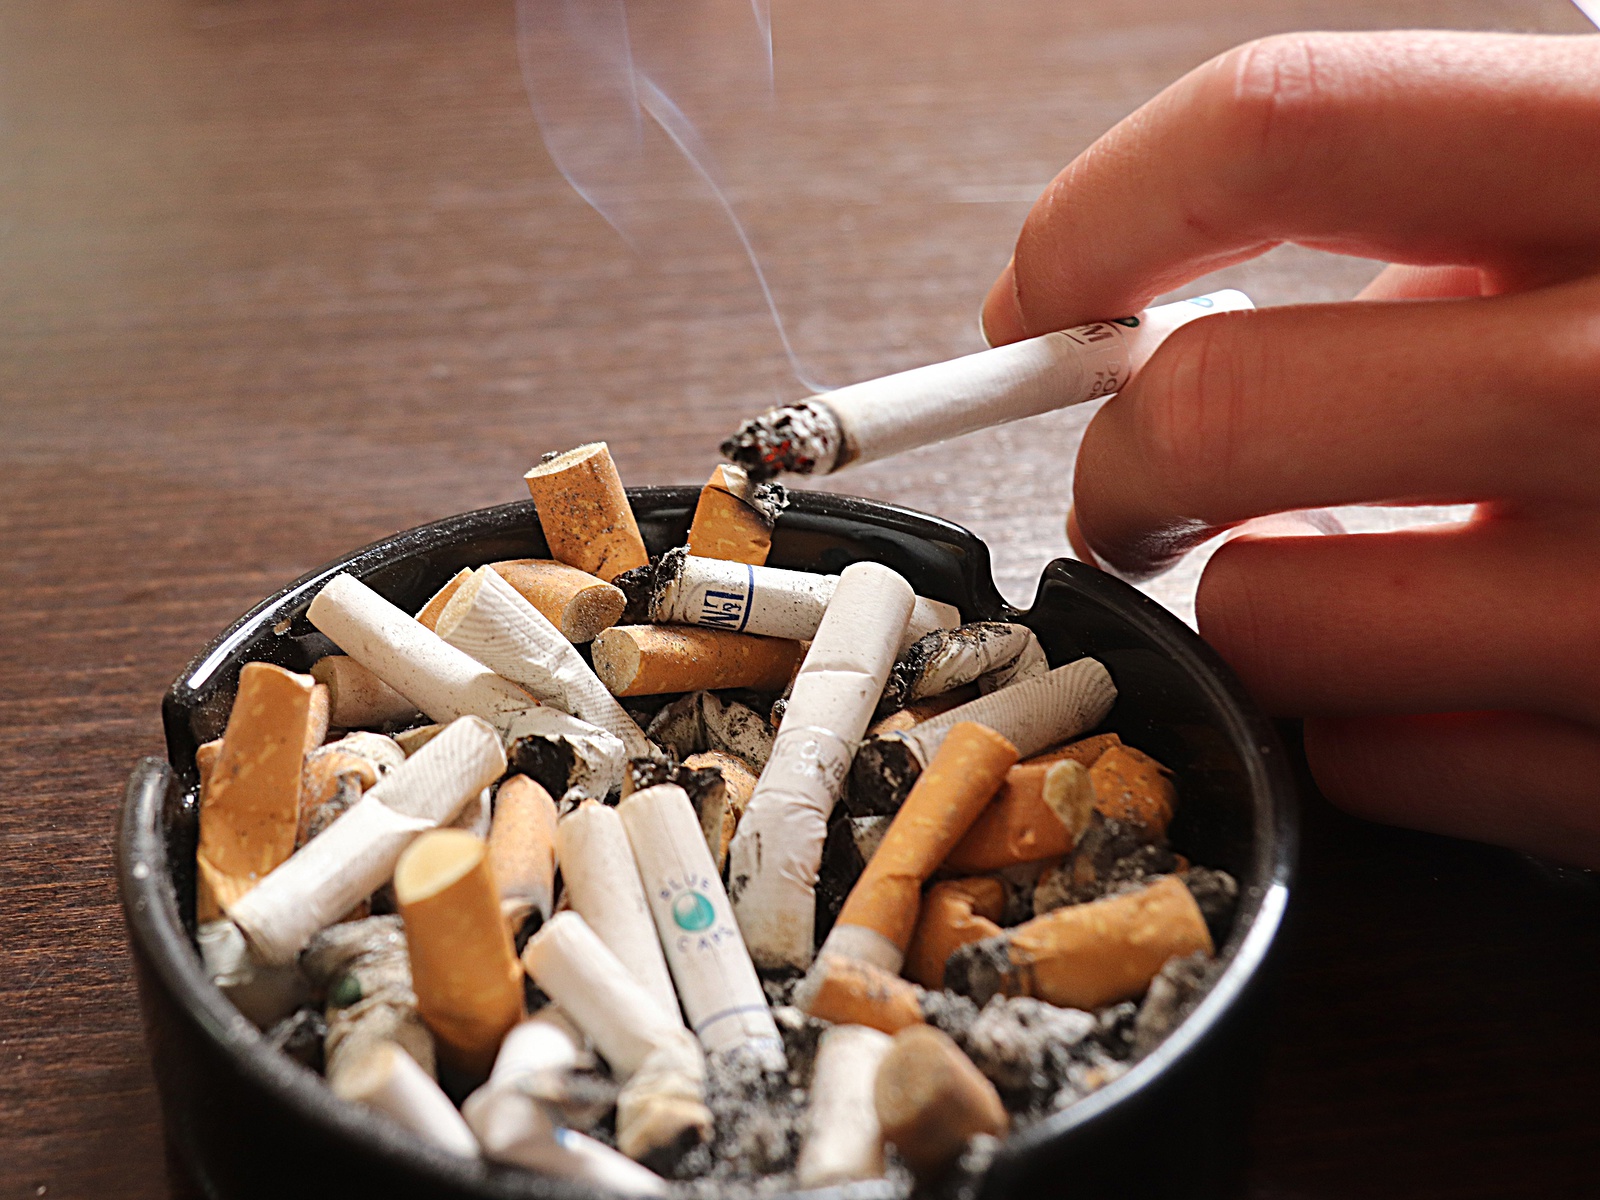 Kuřáci si s neřestí i zákonem poradí - Rakovnický deník